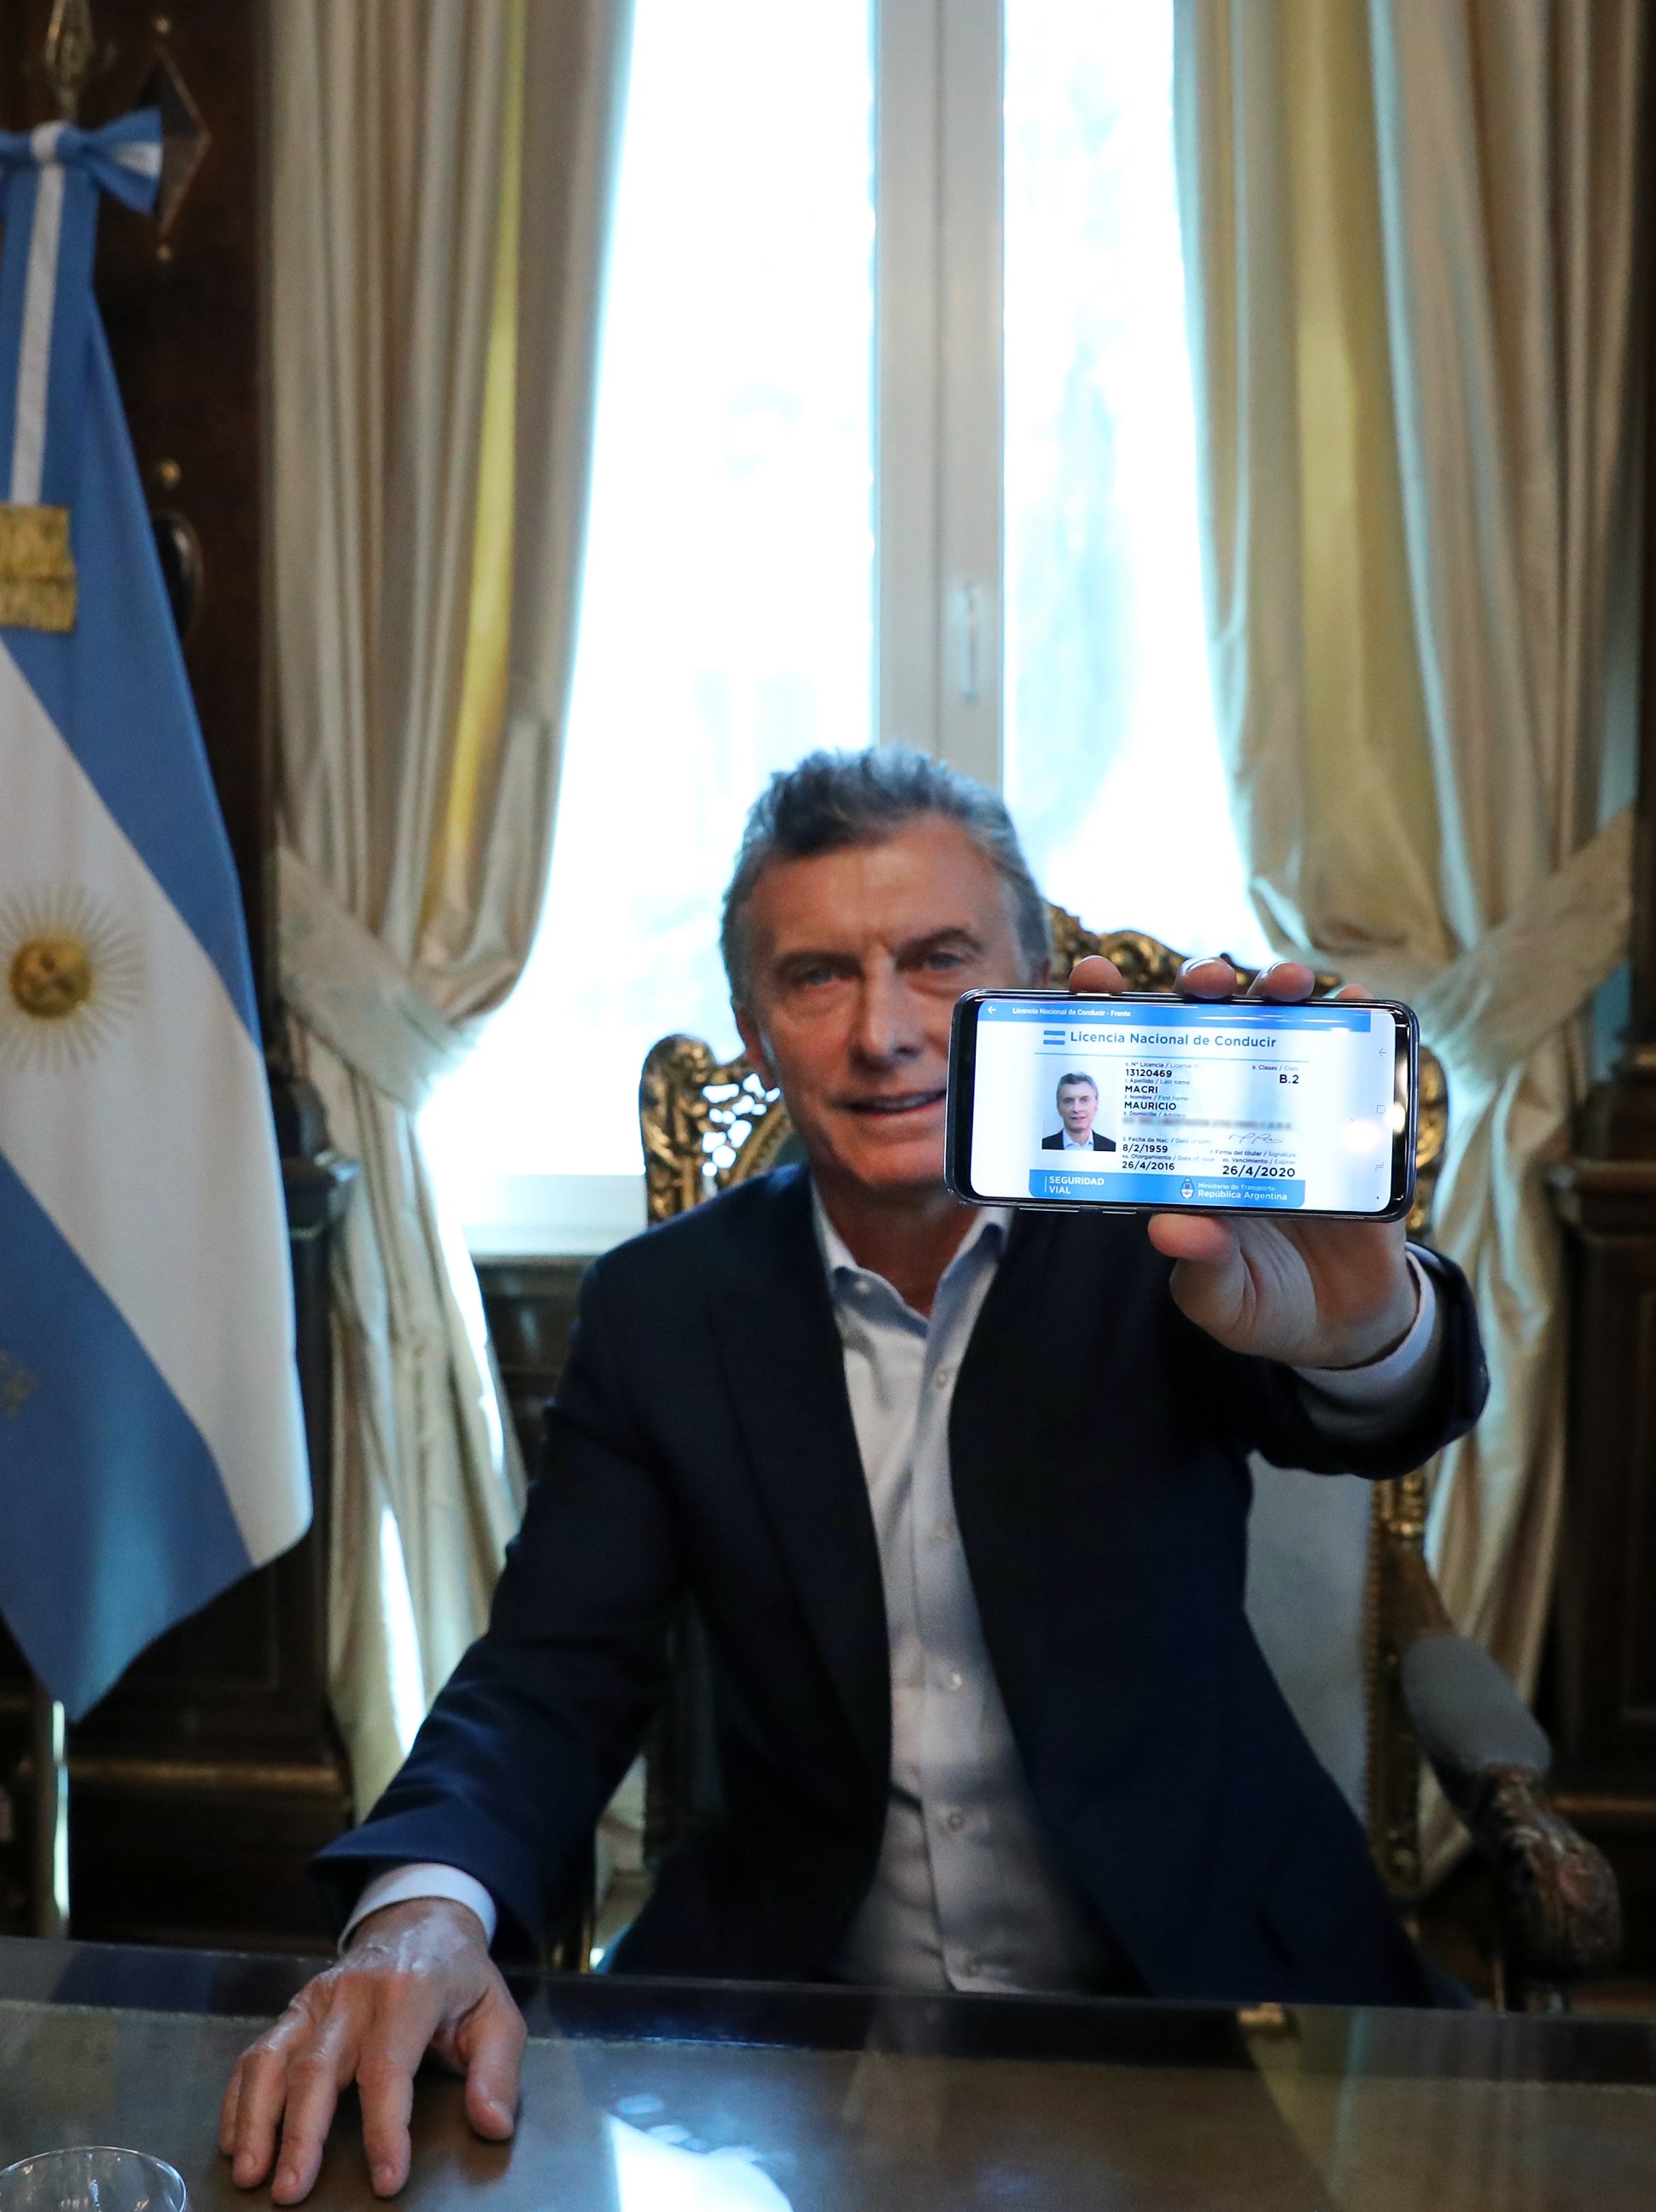 El presidente Macri presentó por redes sociales la licencia de conducir digital